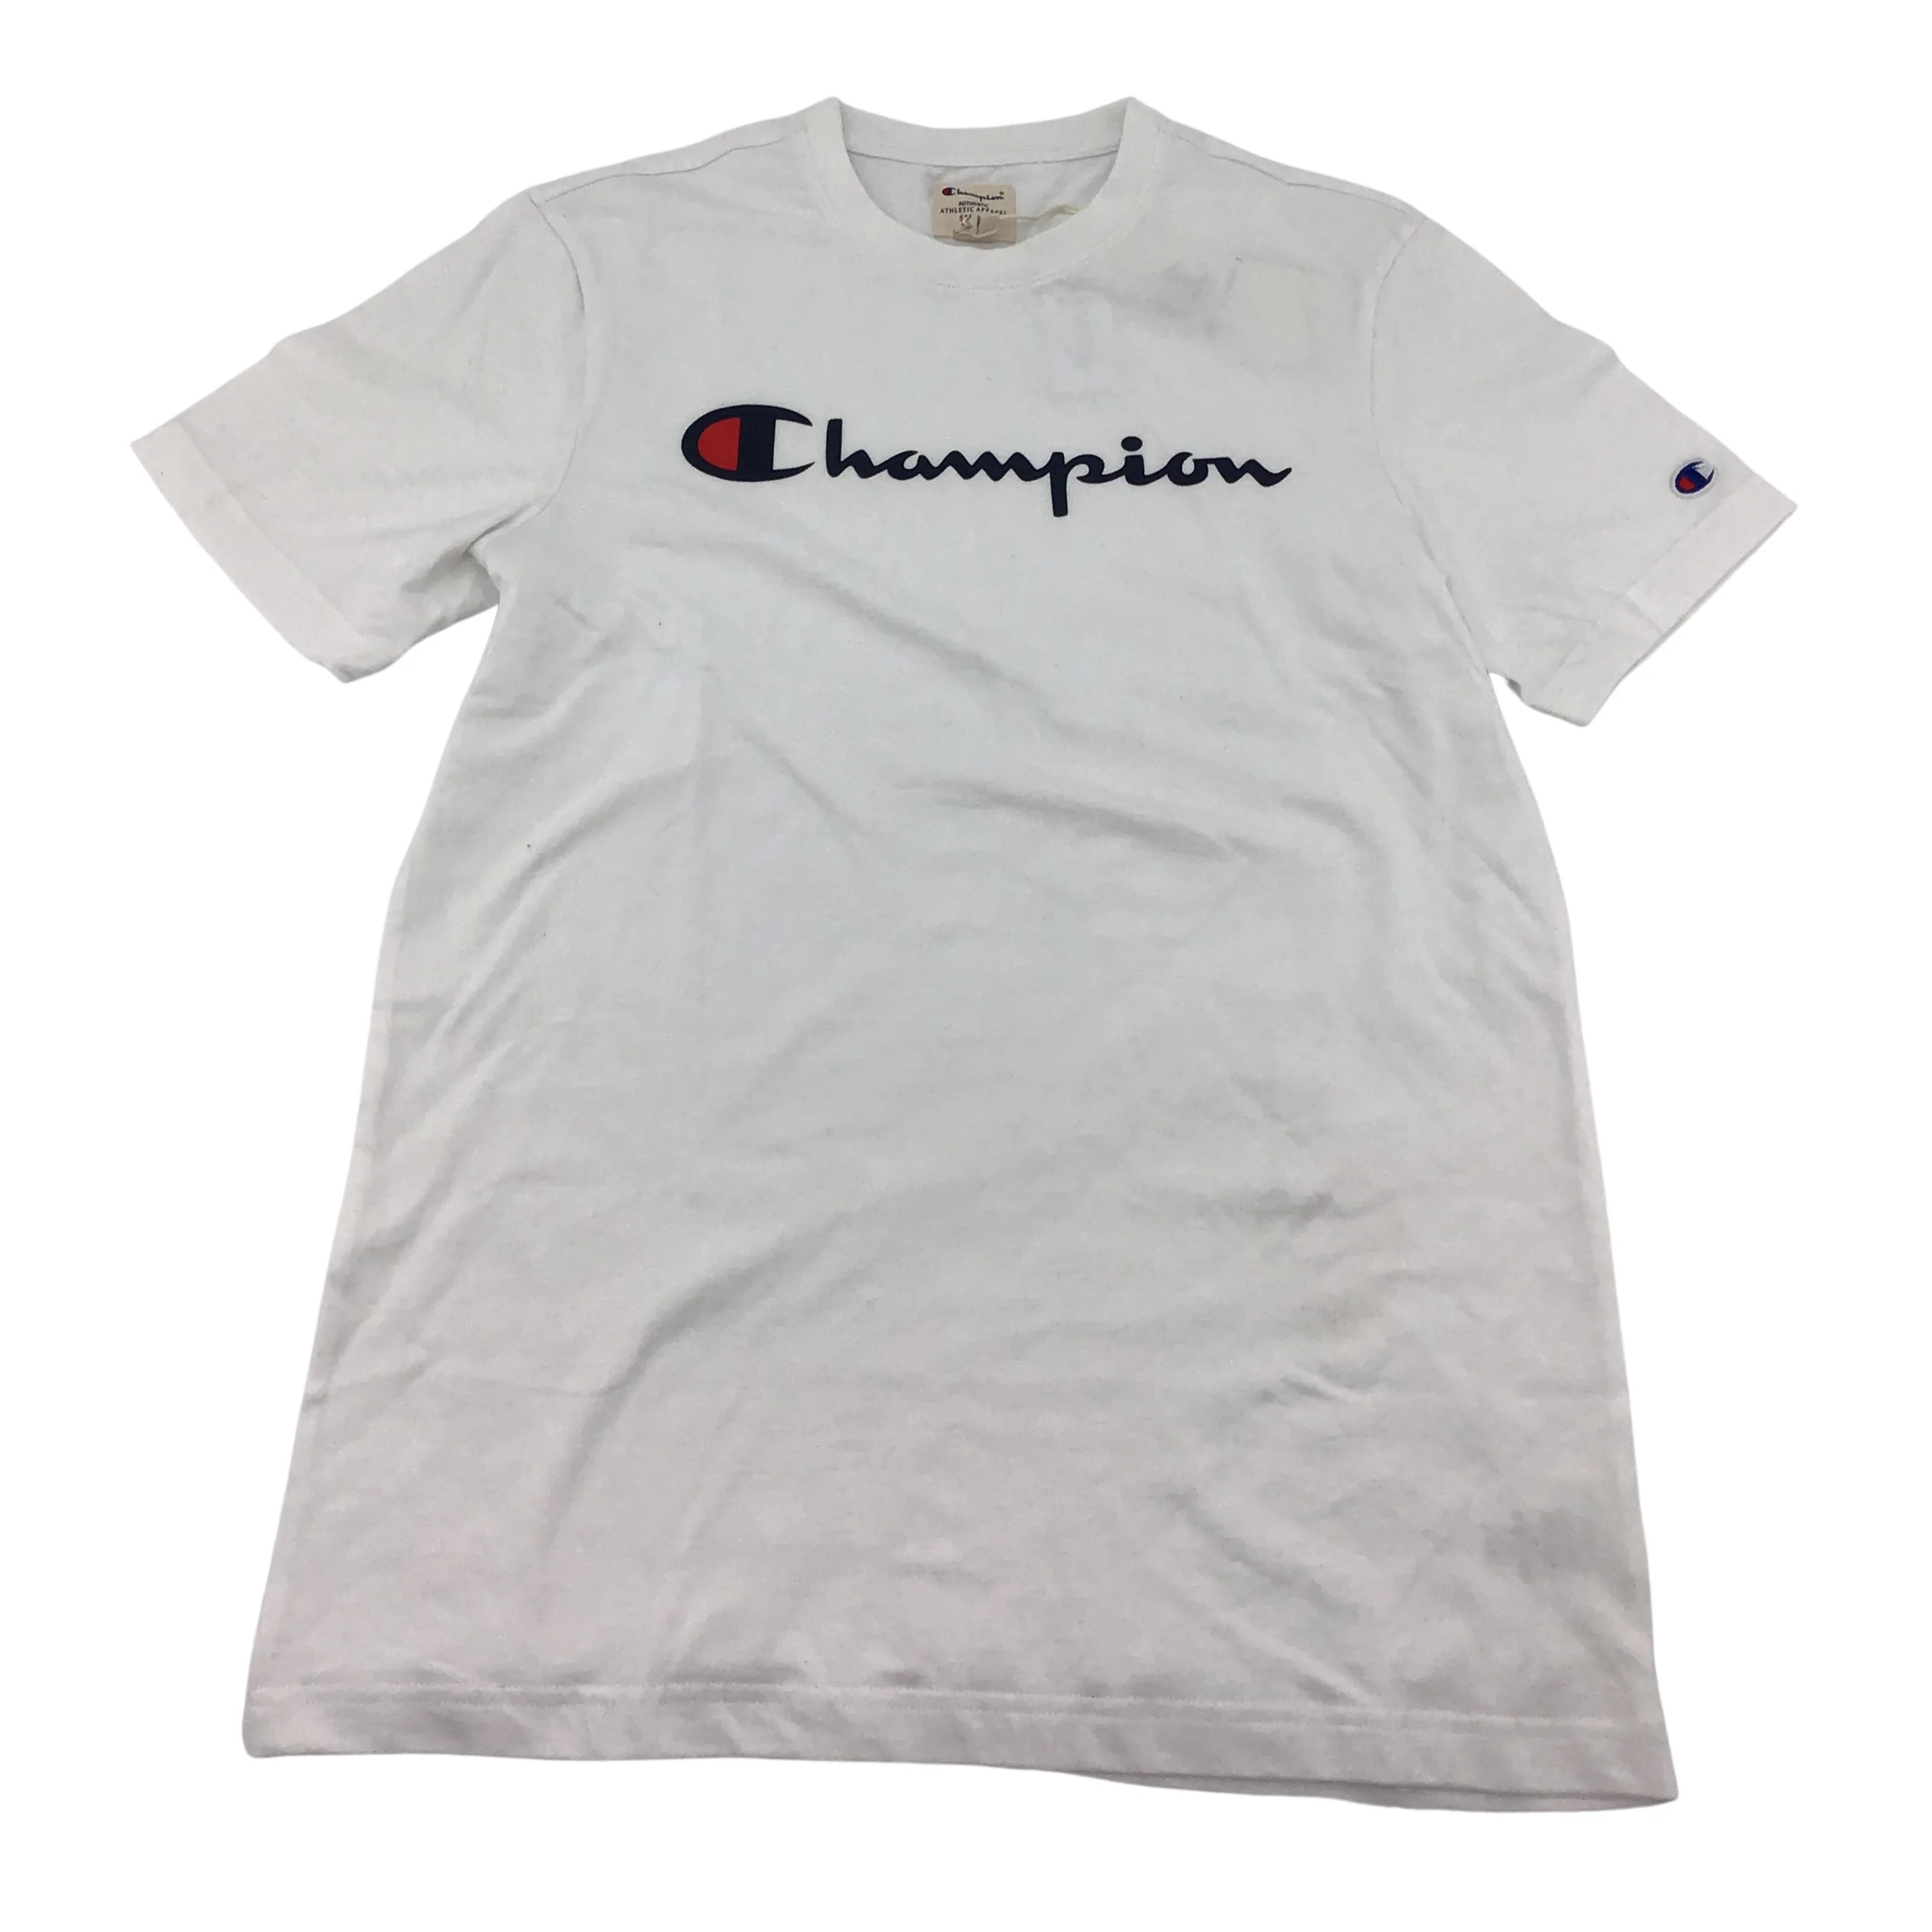 Champion Men's T-shirt: White/ Crew neck / Various Sizes